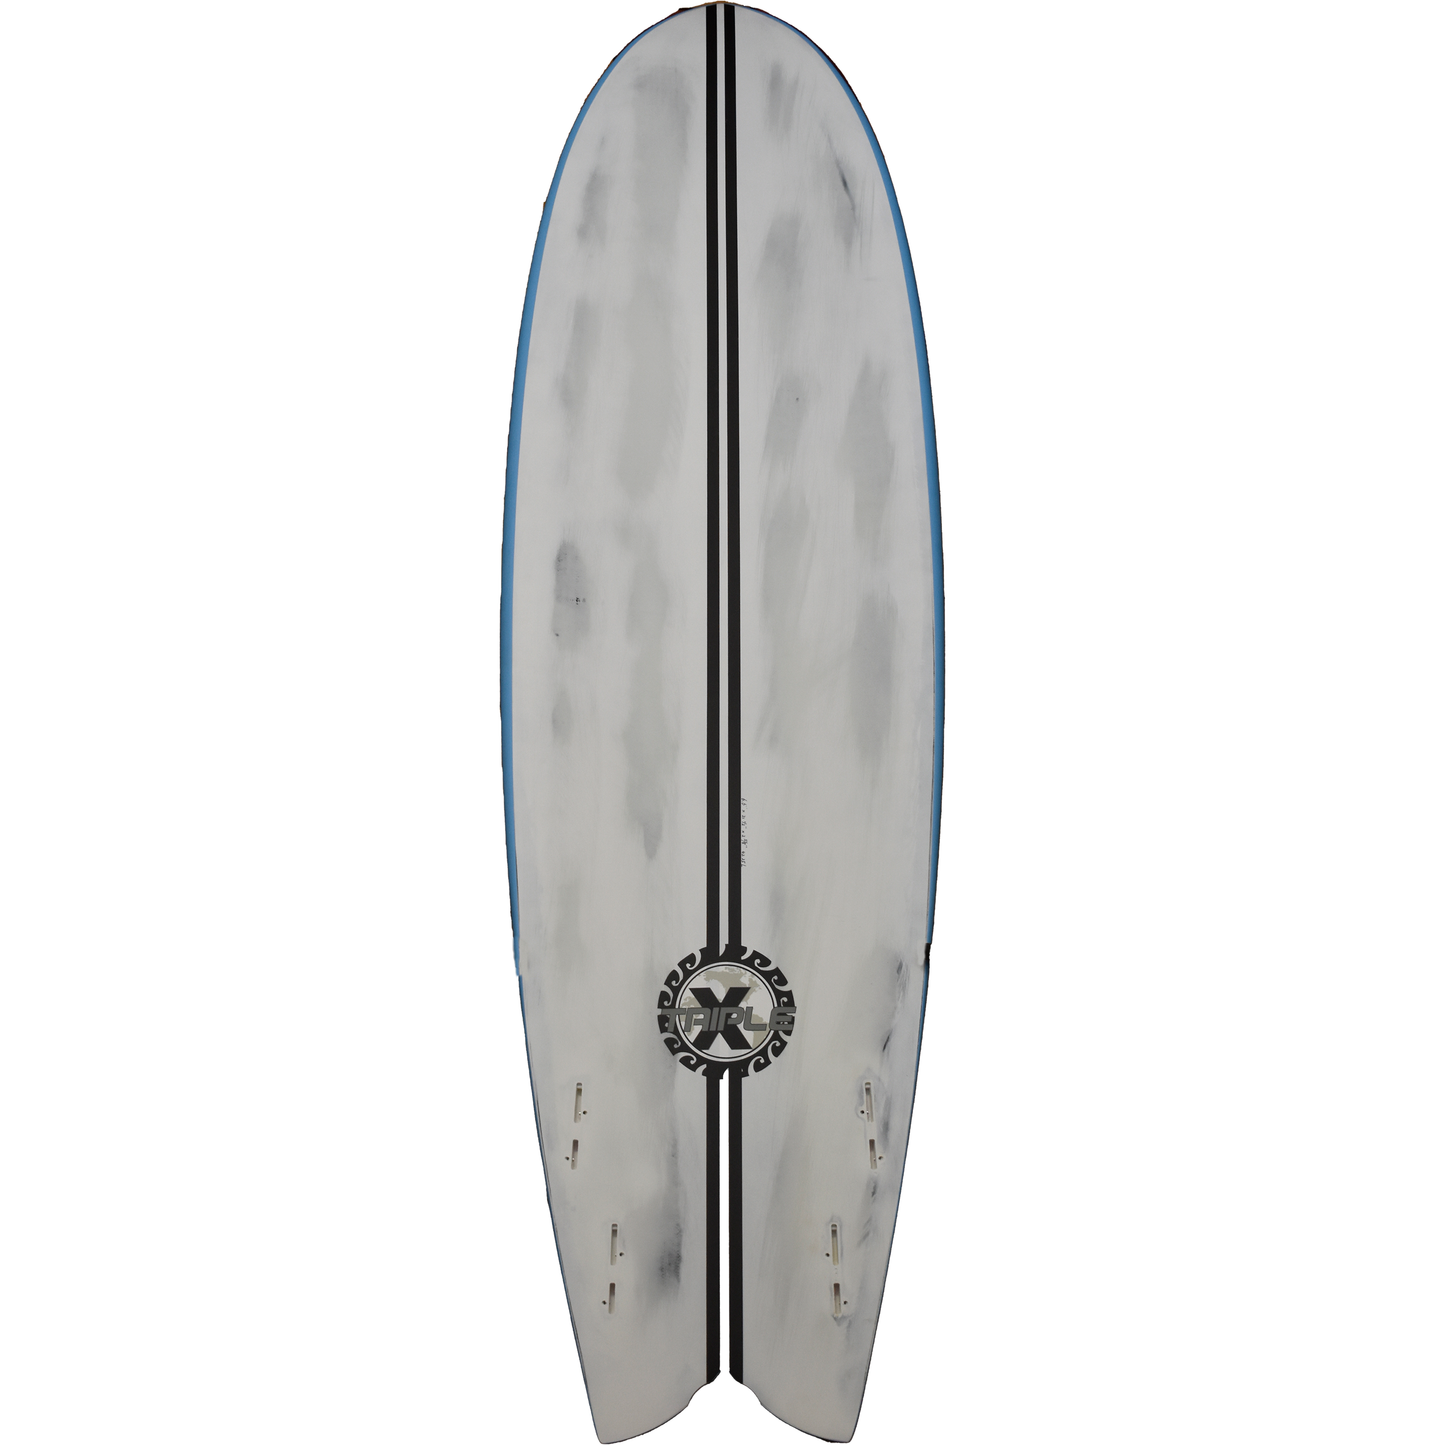 Triple X fish quad fin surfboard